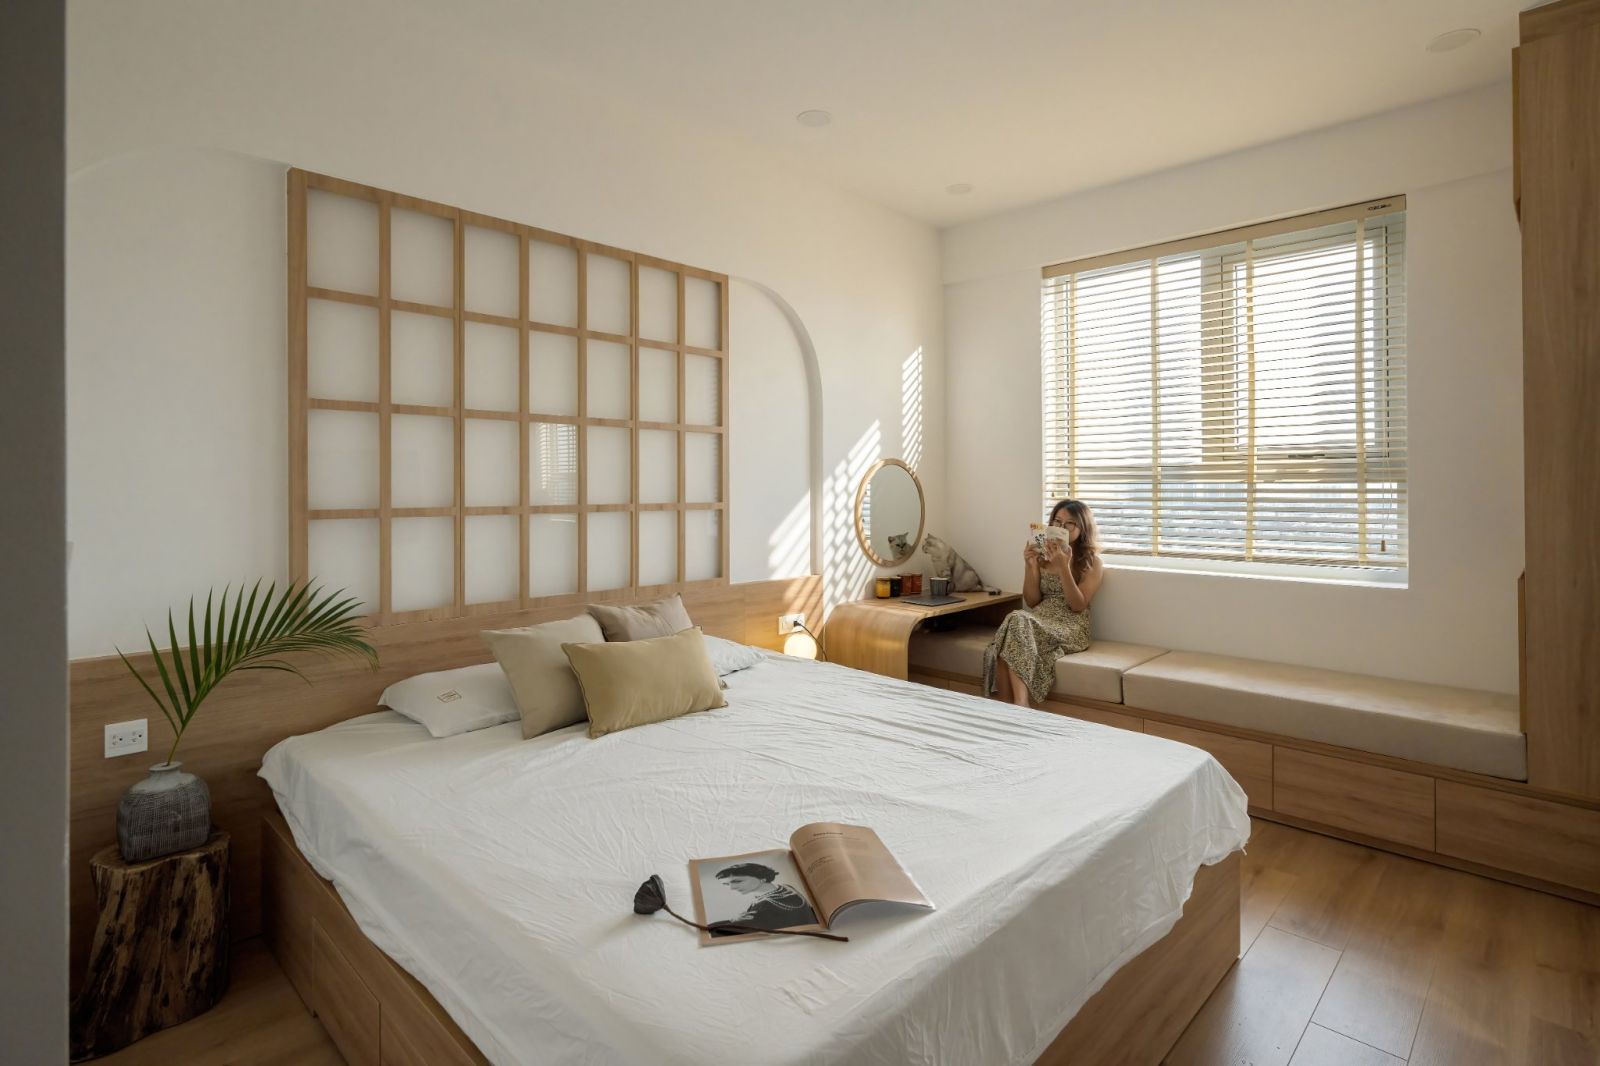 Căn phòng ngủ nhỏ xinh được vợ chồng anh Thuyết thiết kế tối giản.